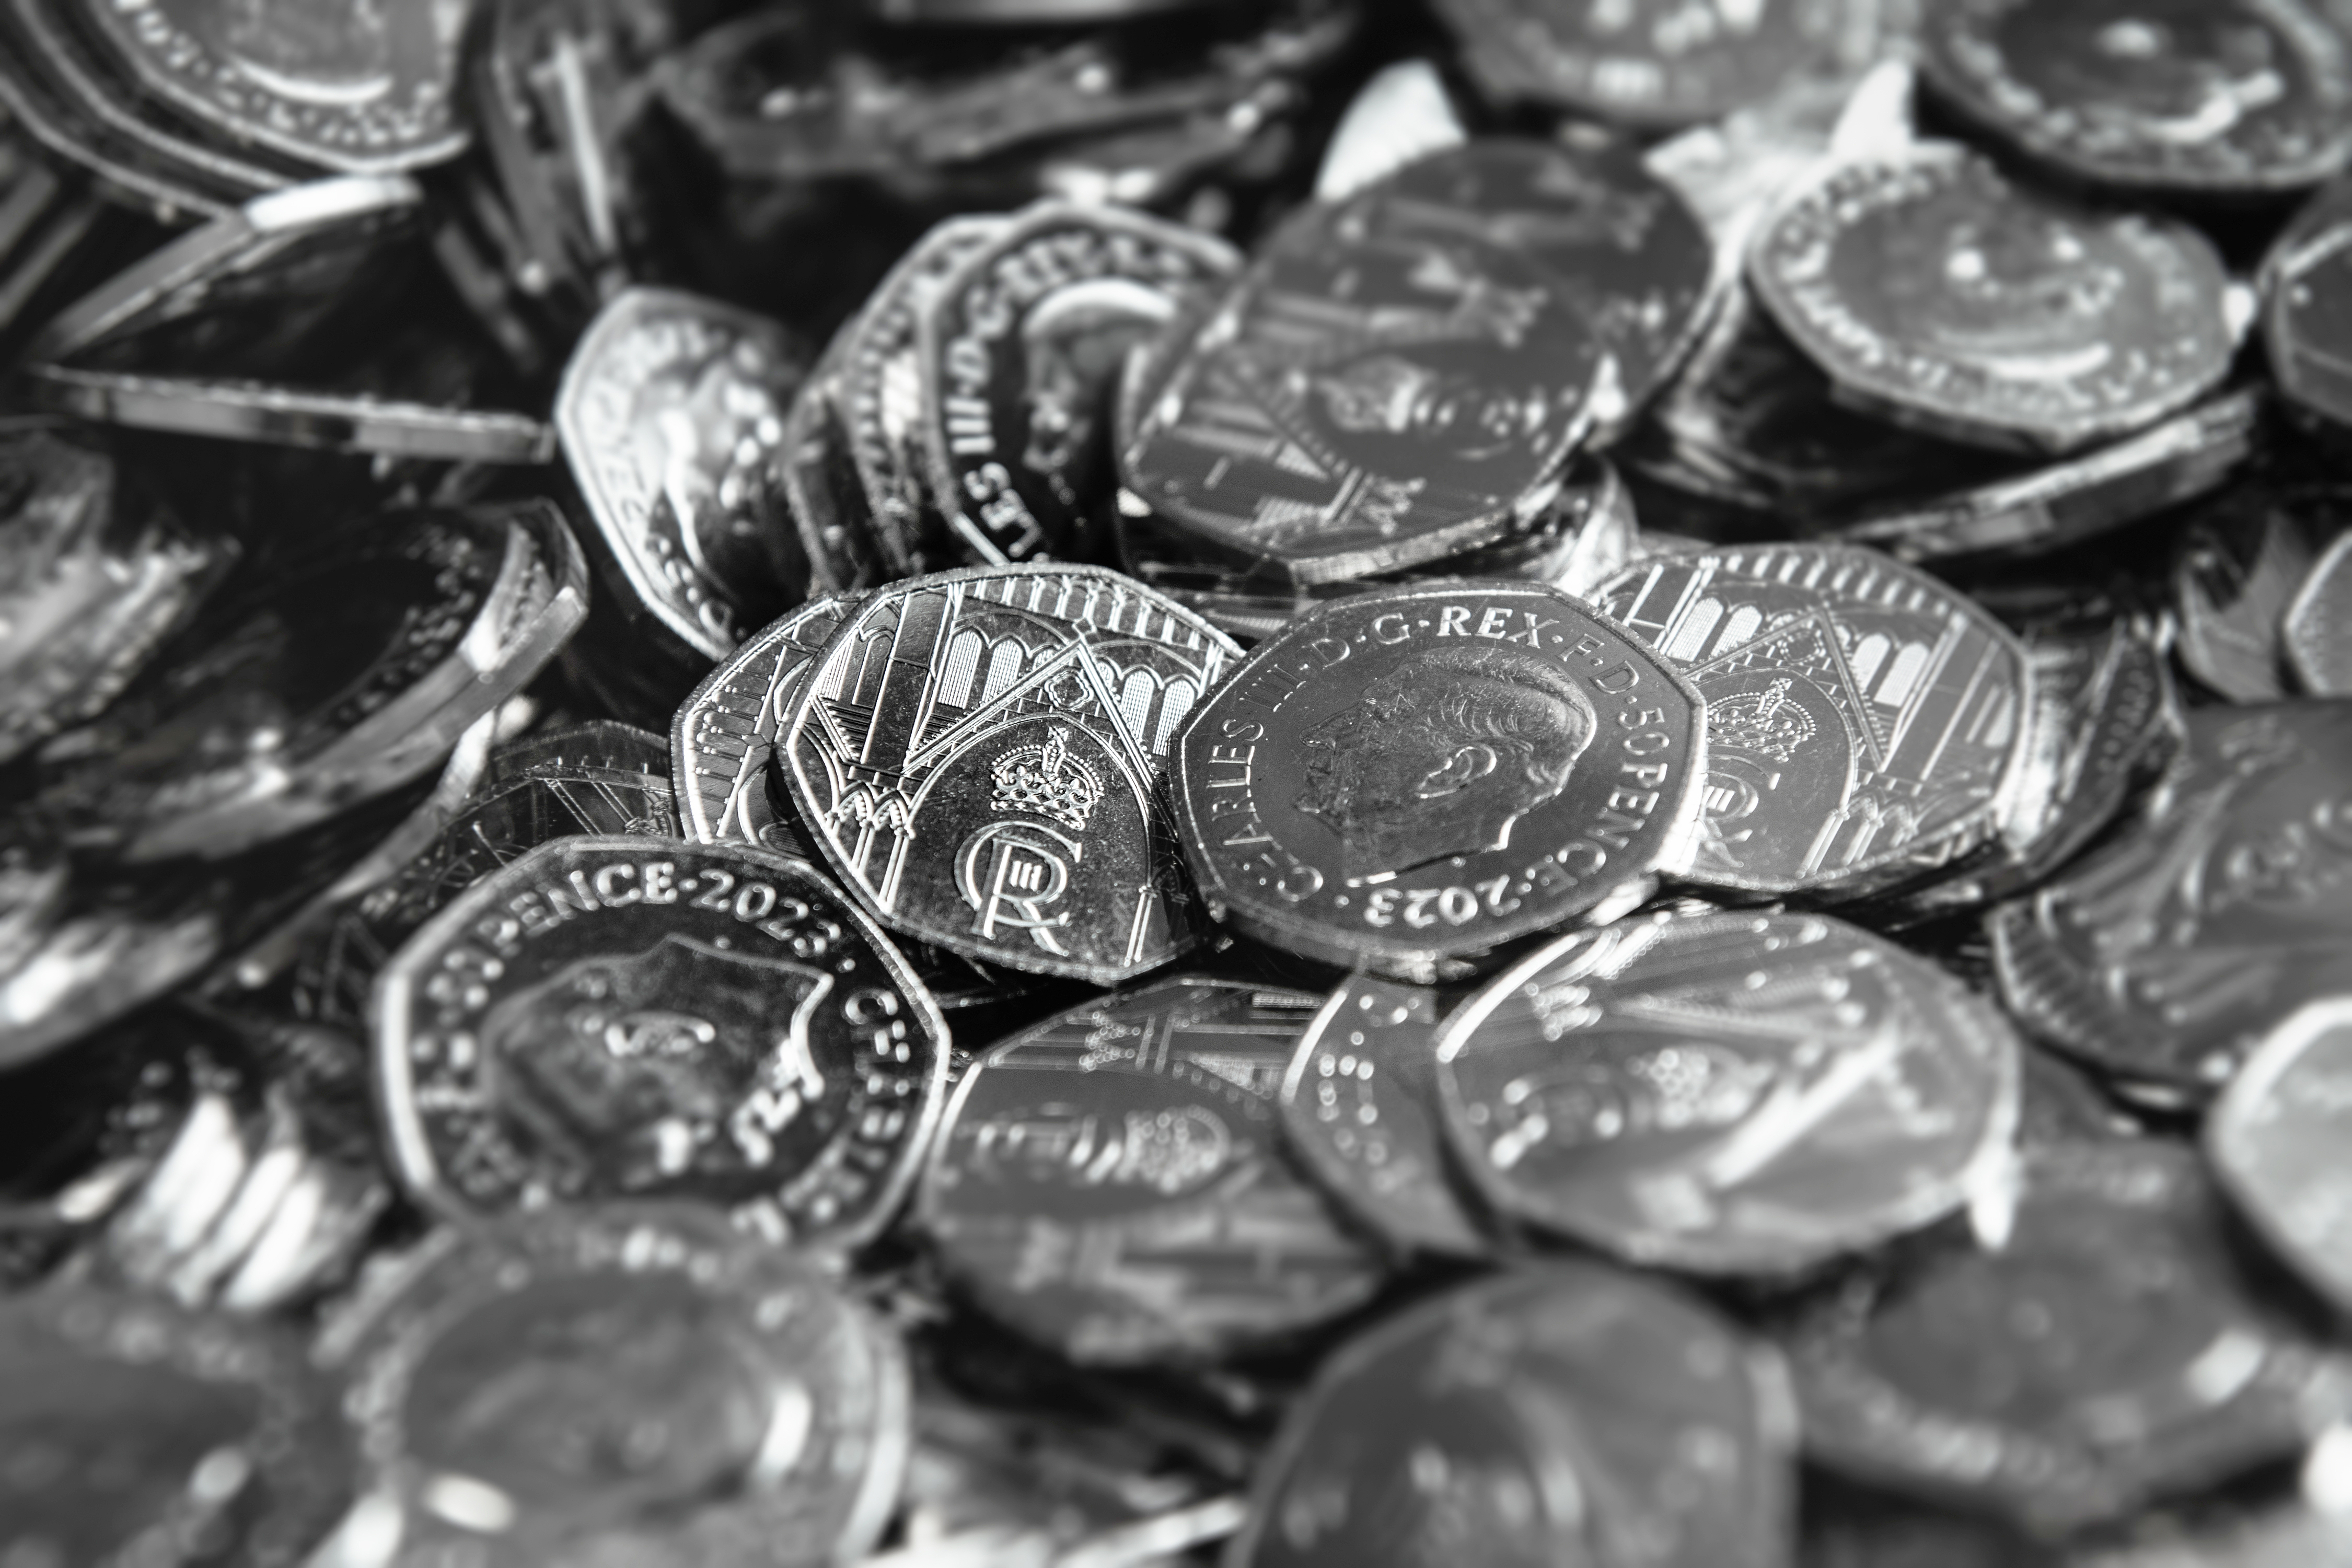 Royal Mint 50p coins